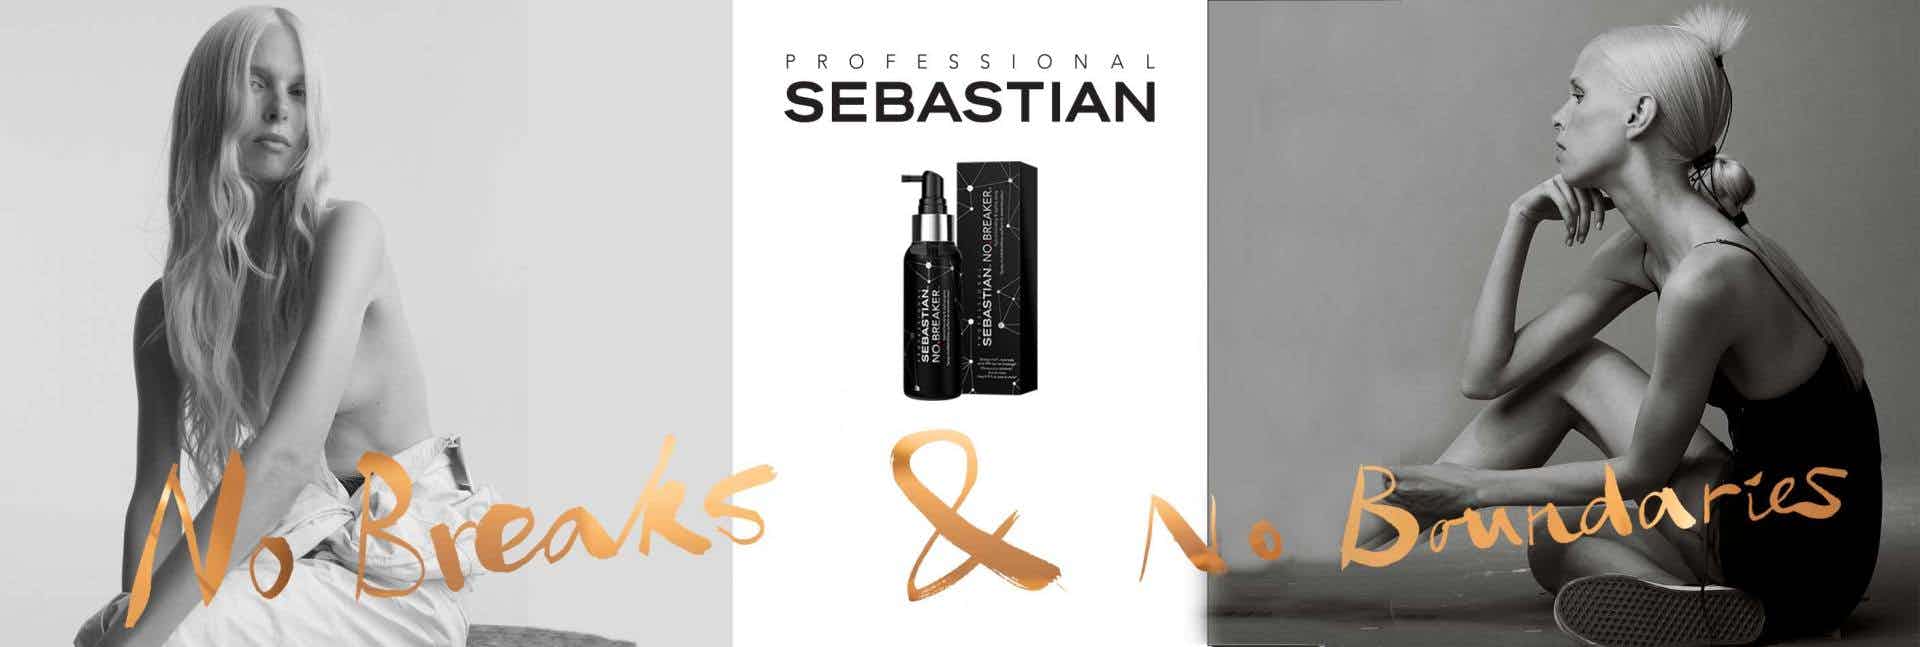 Sebastian-banner-it